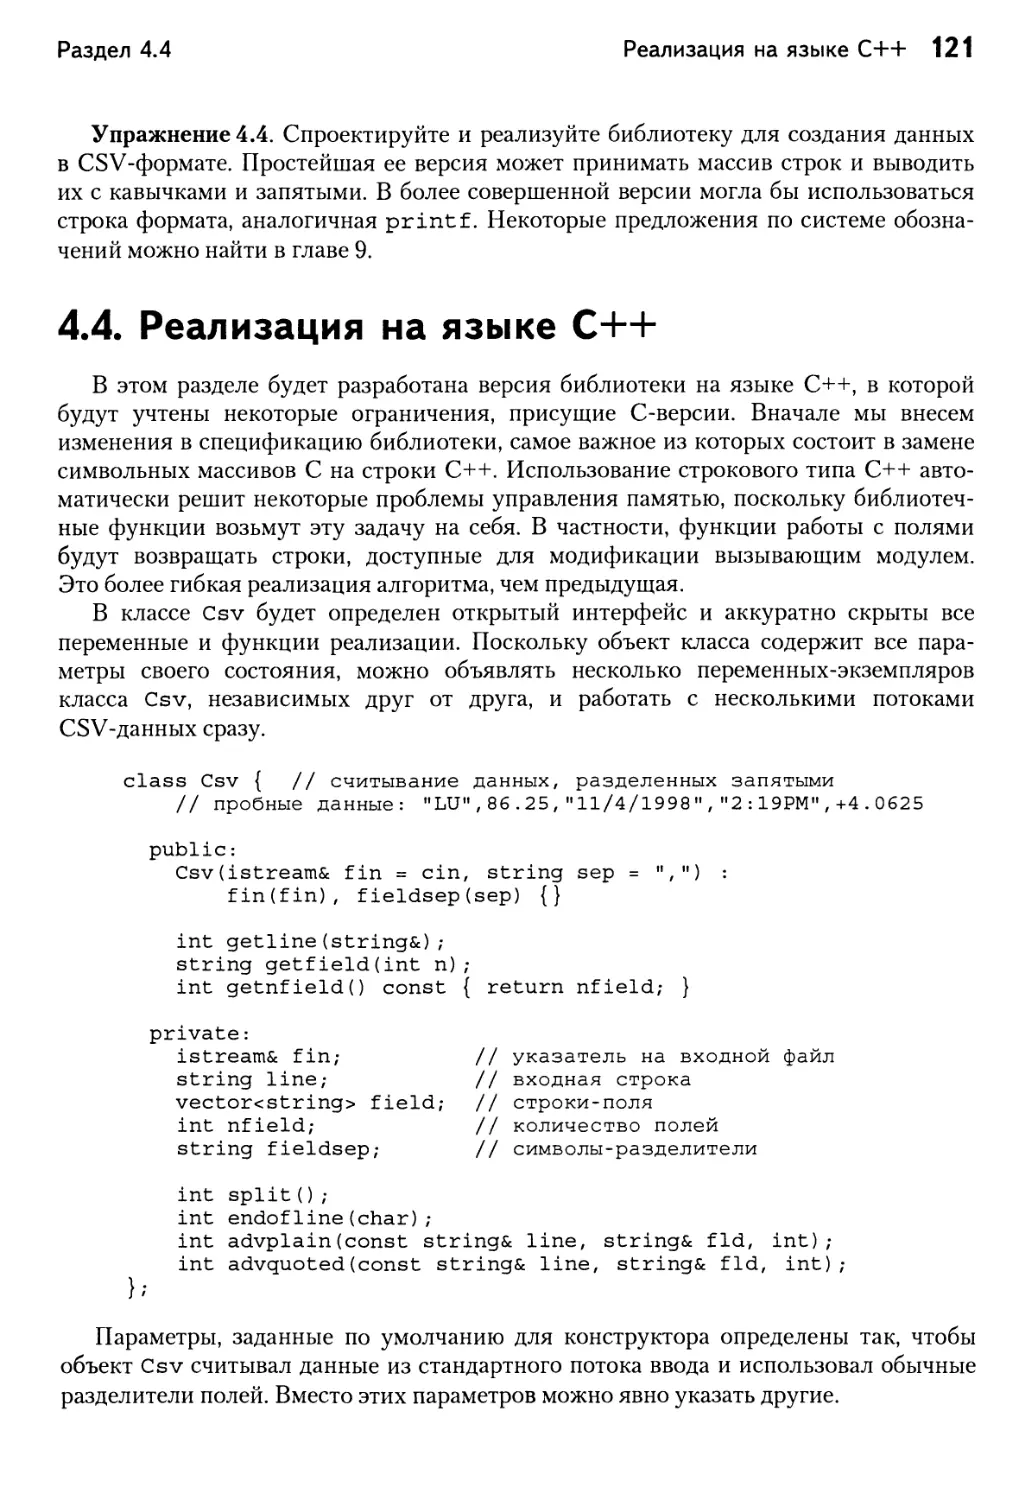 4.4. Реализация на языке C++